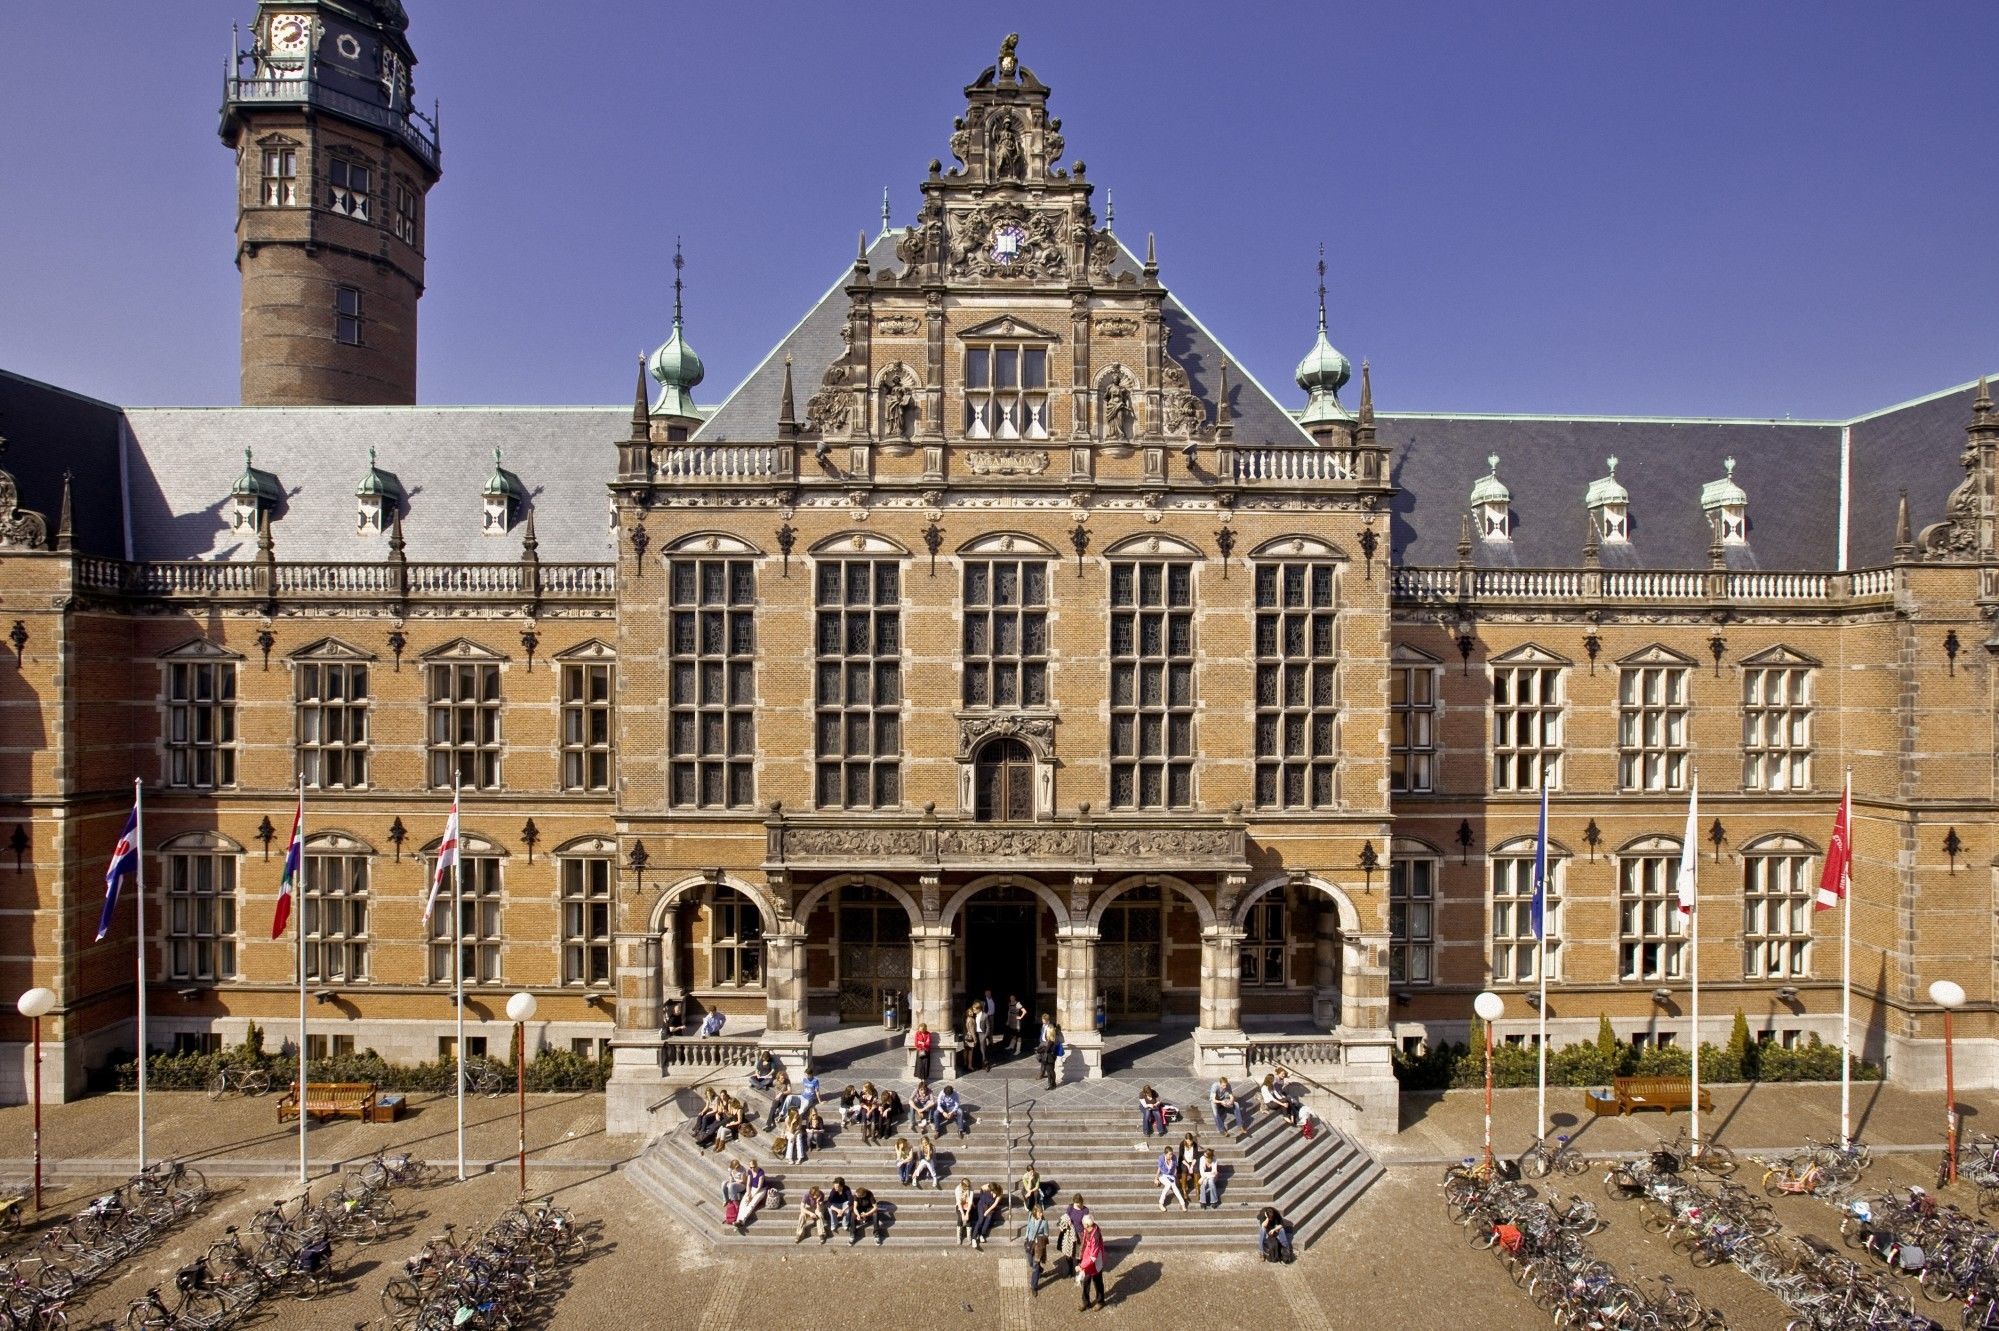 7 University of Groningen